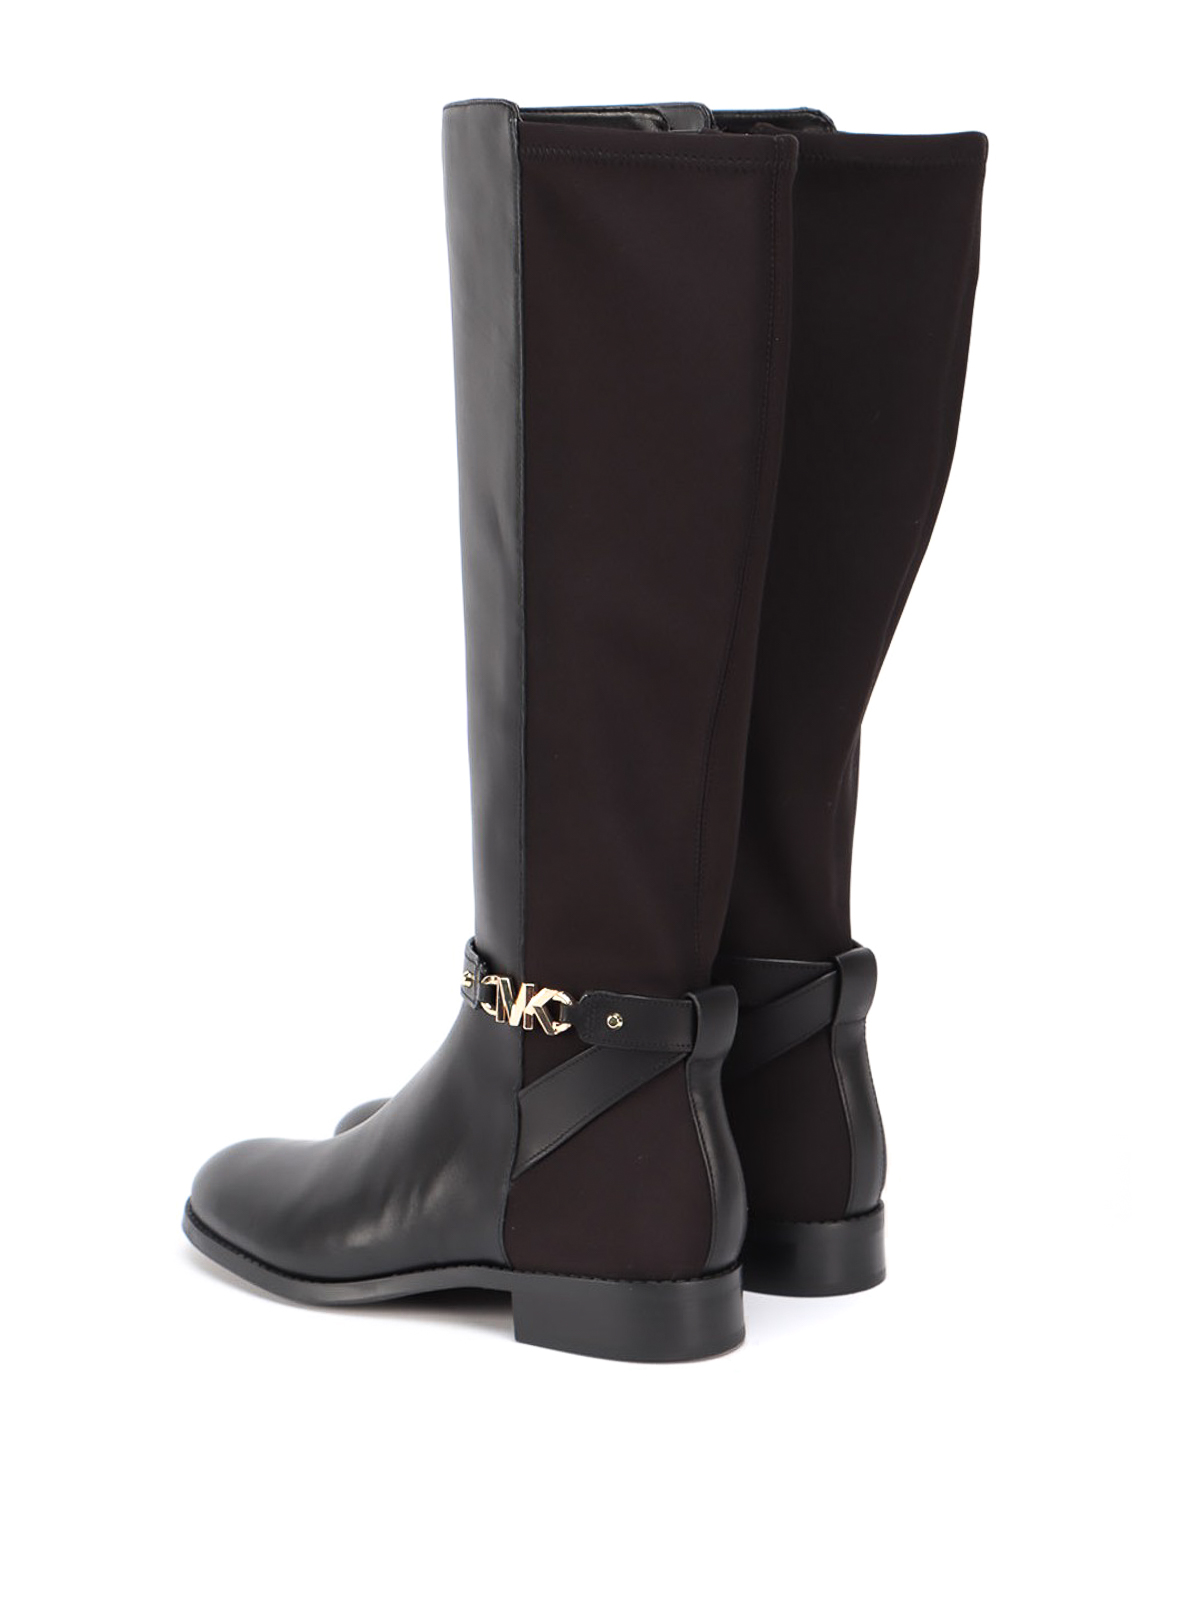 Boots Michael Kors - Farrah boots - 40F1FHFB5L001 | Shop online at iKRIX